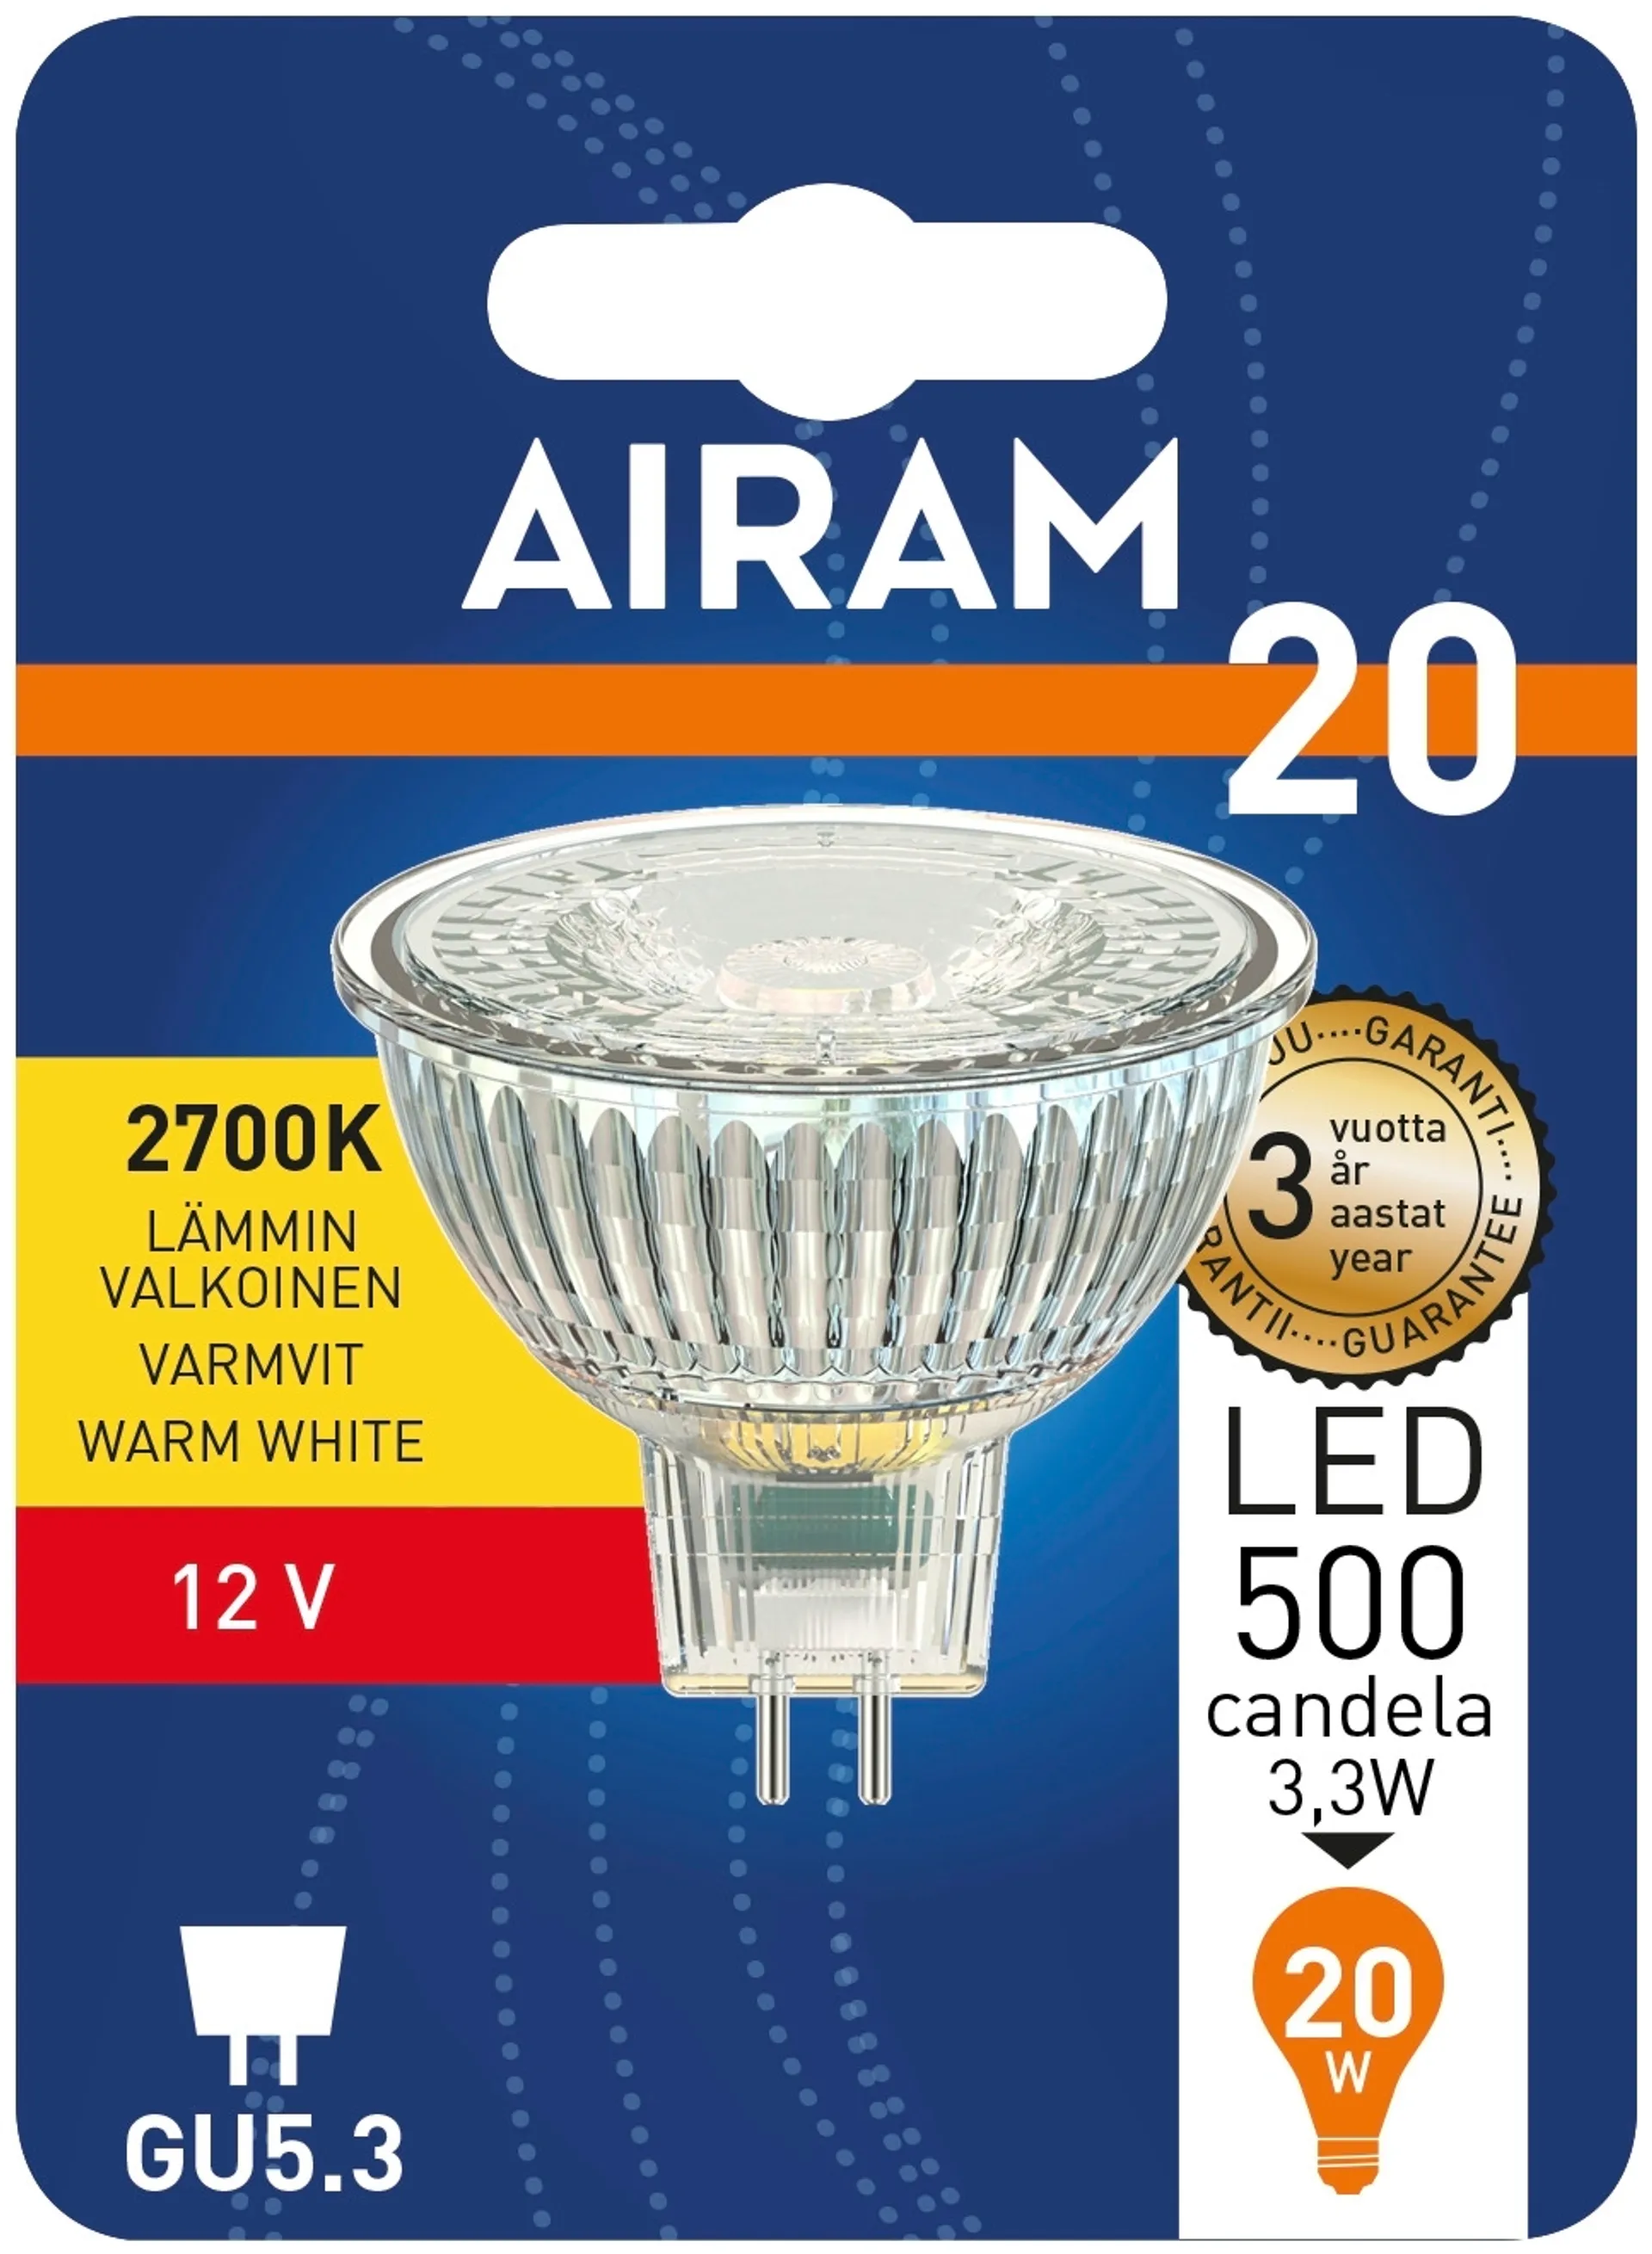 Airam Led kohde MR16 fullglass 3,2W GU5.3 270lm/500cd 2700K 12V, blister - 2